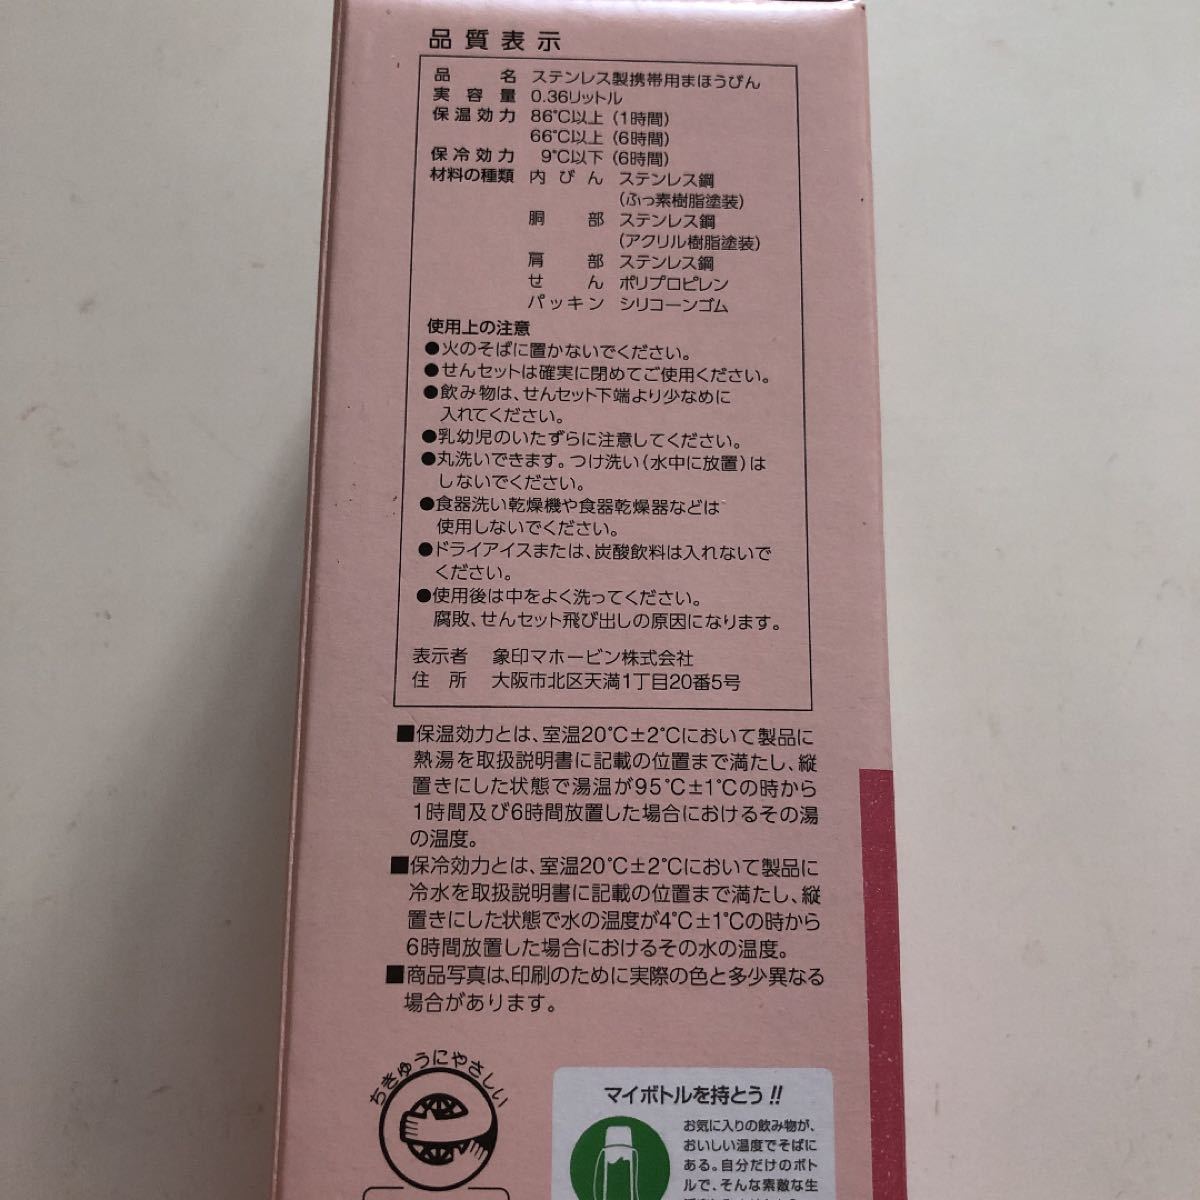 ZOJIRUSHI 象印 水筒 ステンレスマグ 360ml ピンク